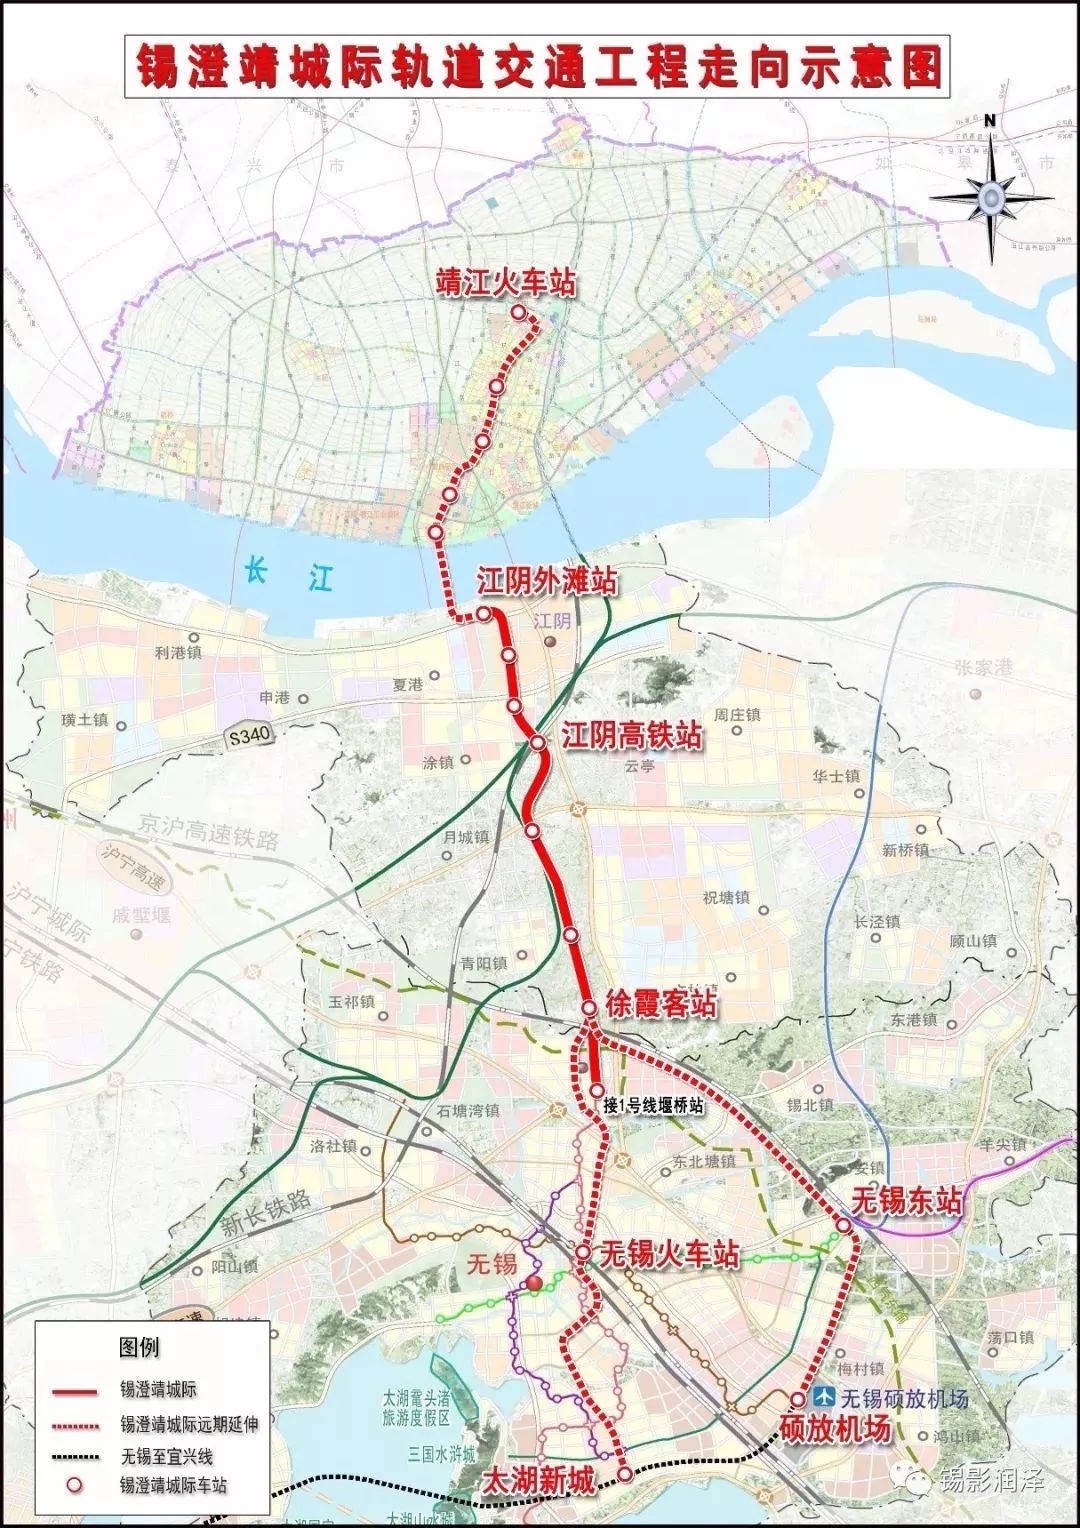 续建 凤翔路快速化改造等项目,推进锡宜城际轨道s2线暨南大道西延等